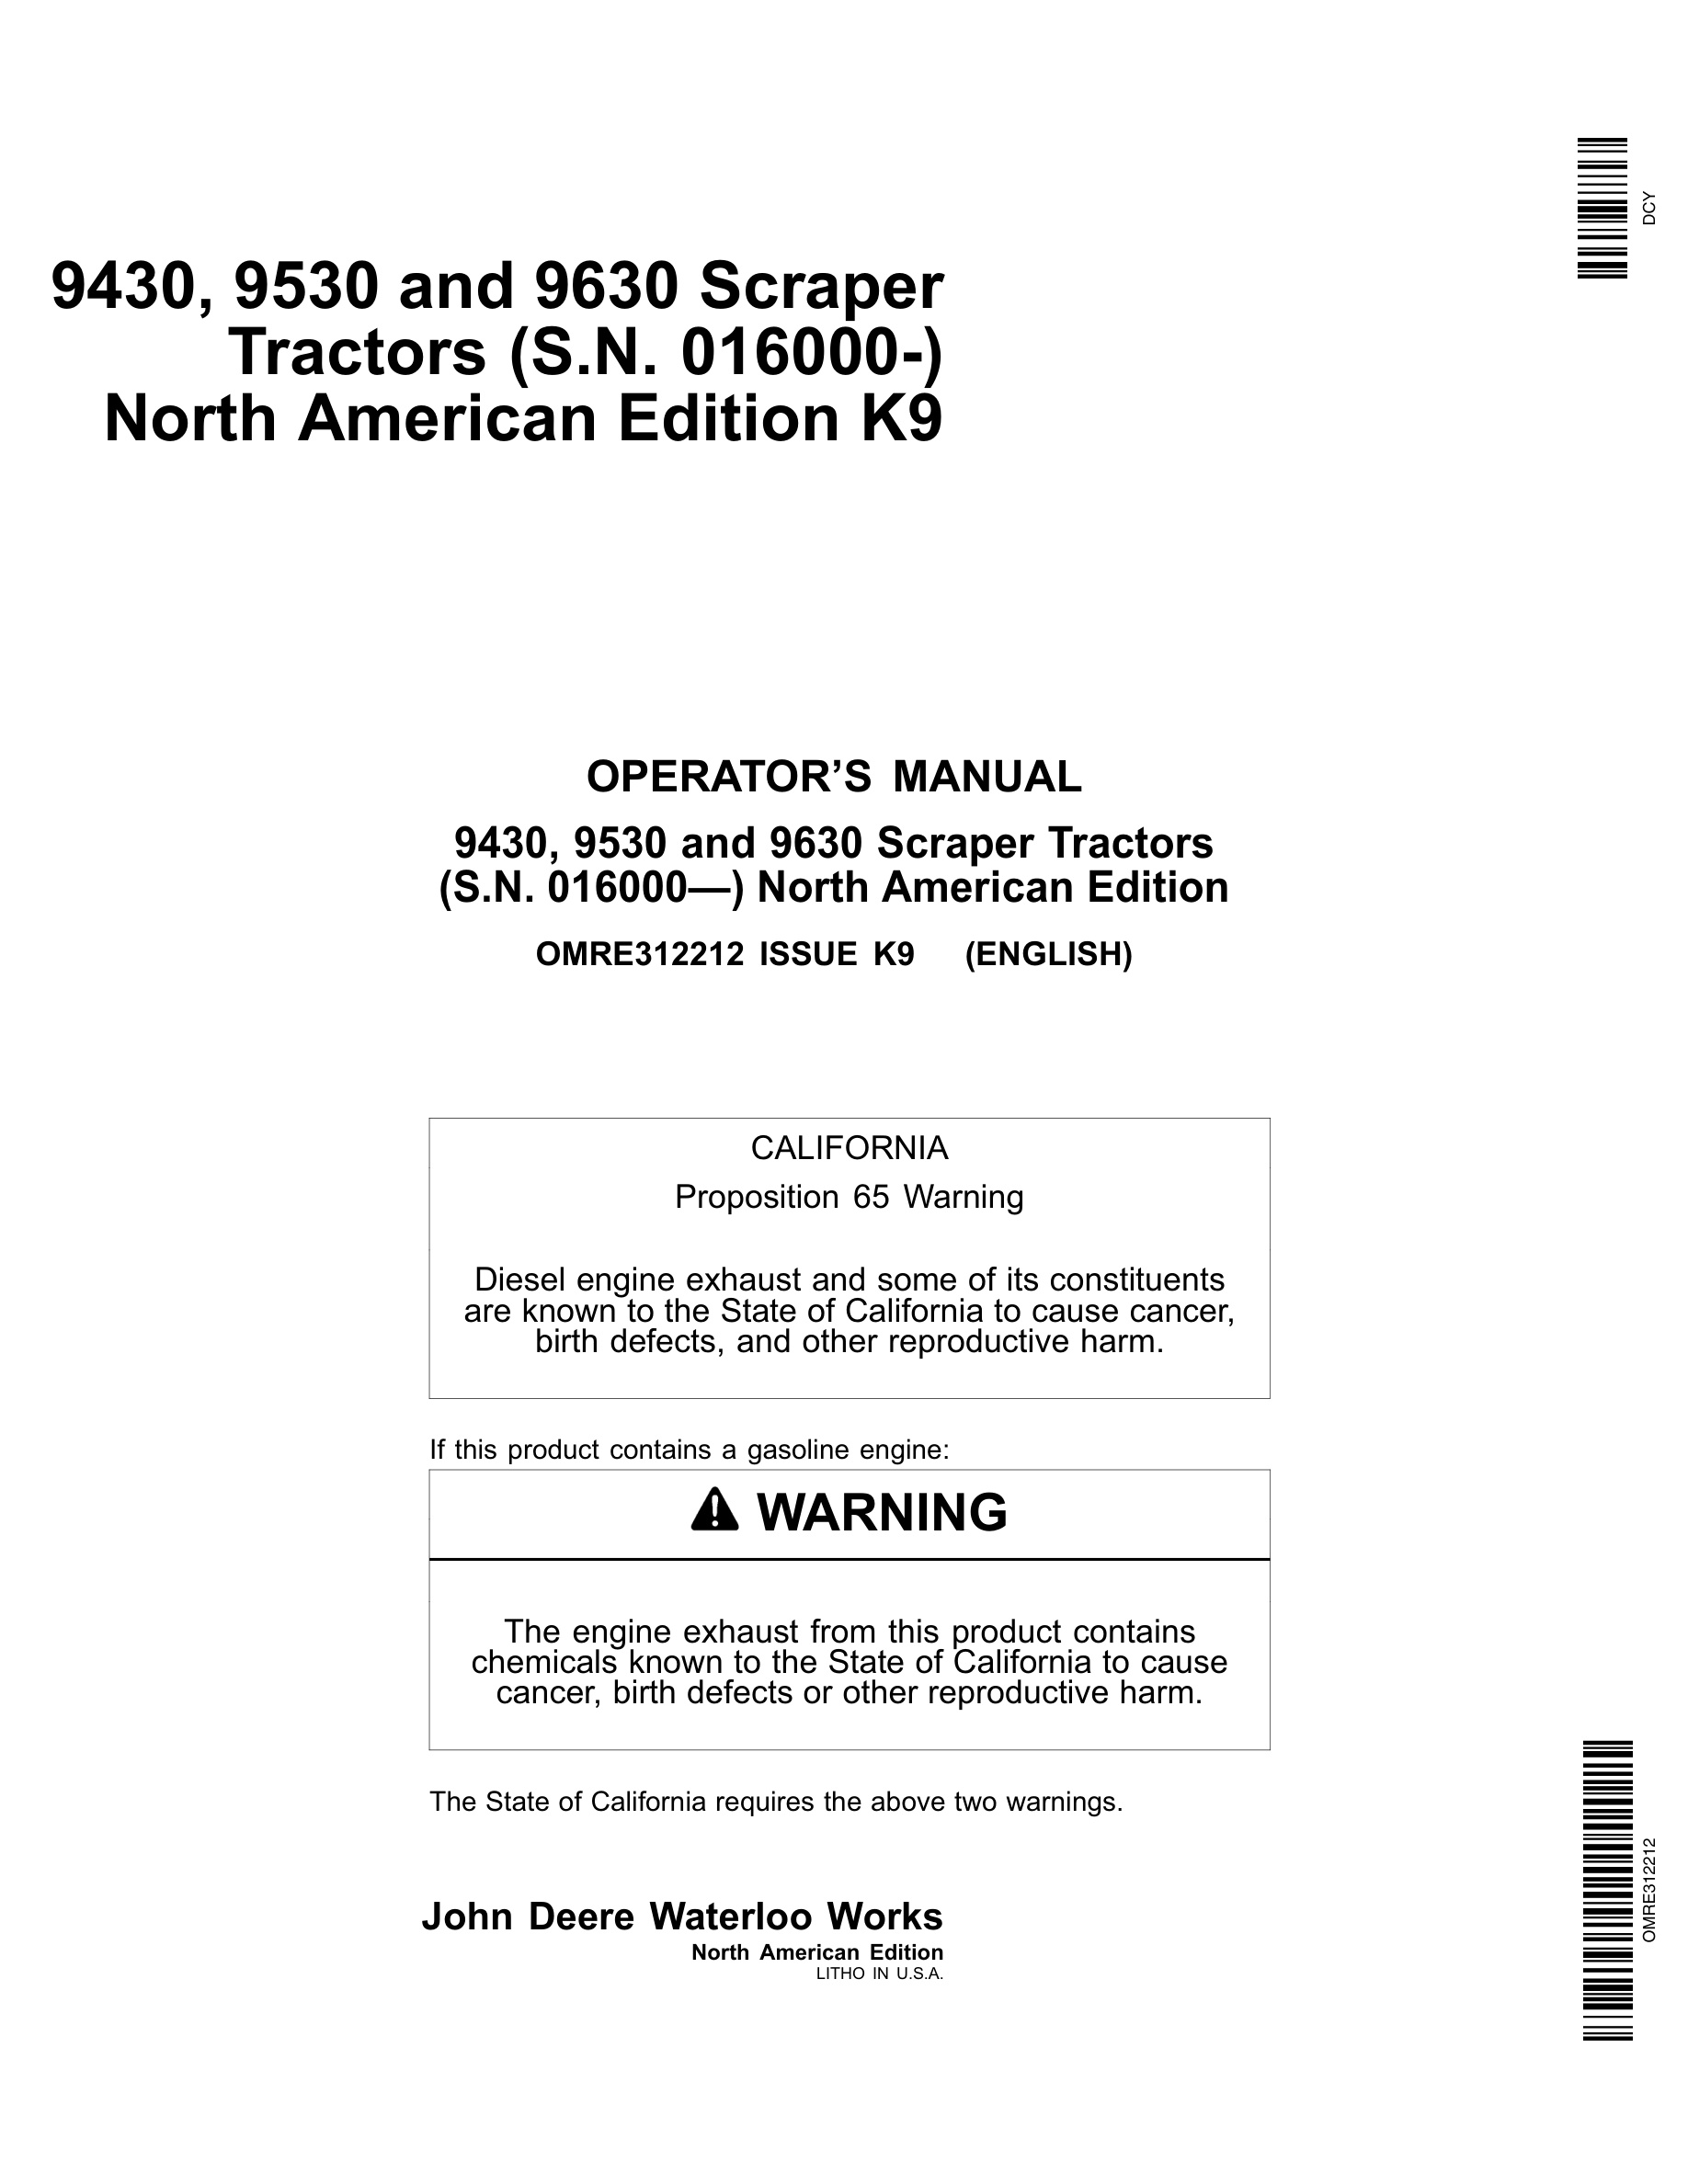 John Deere 9430 9530 9630 Tractor Operator Manual OMRE312212-1